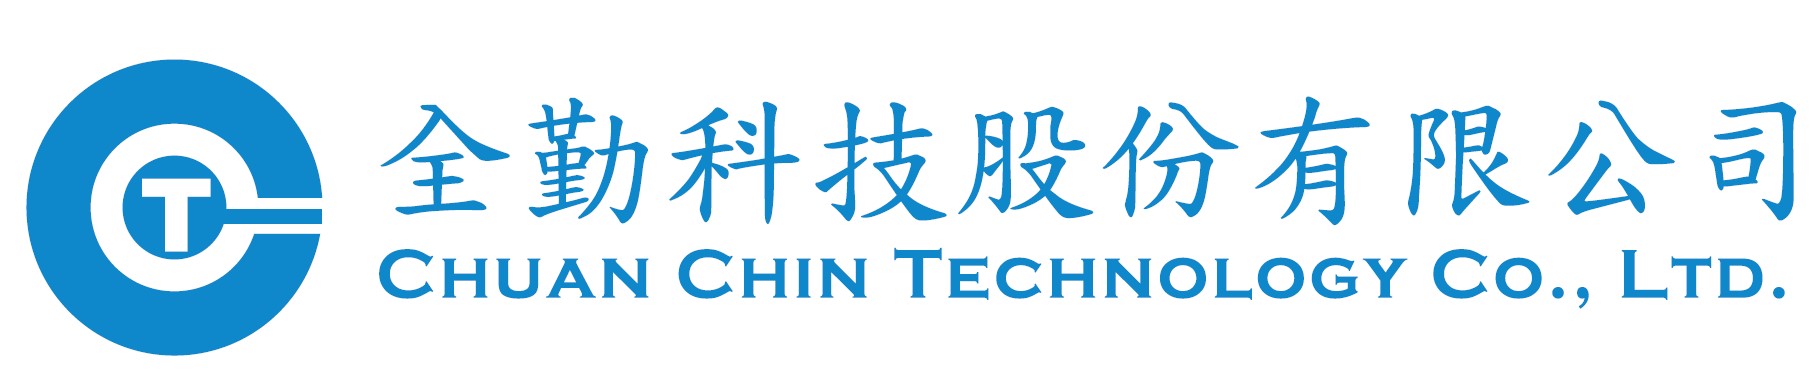 Chuan Chin Technology Co., LTD